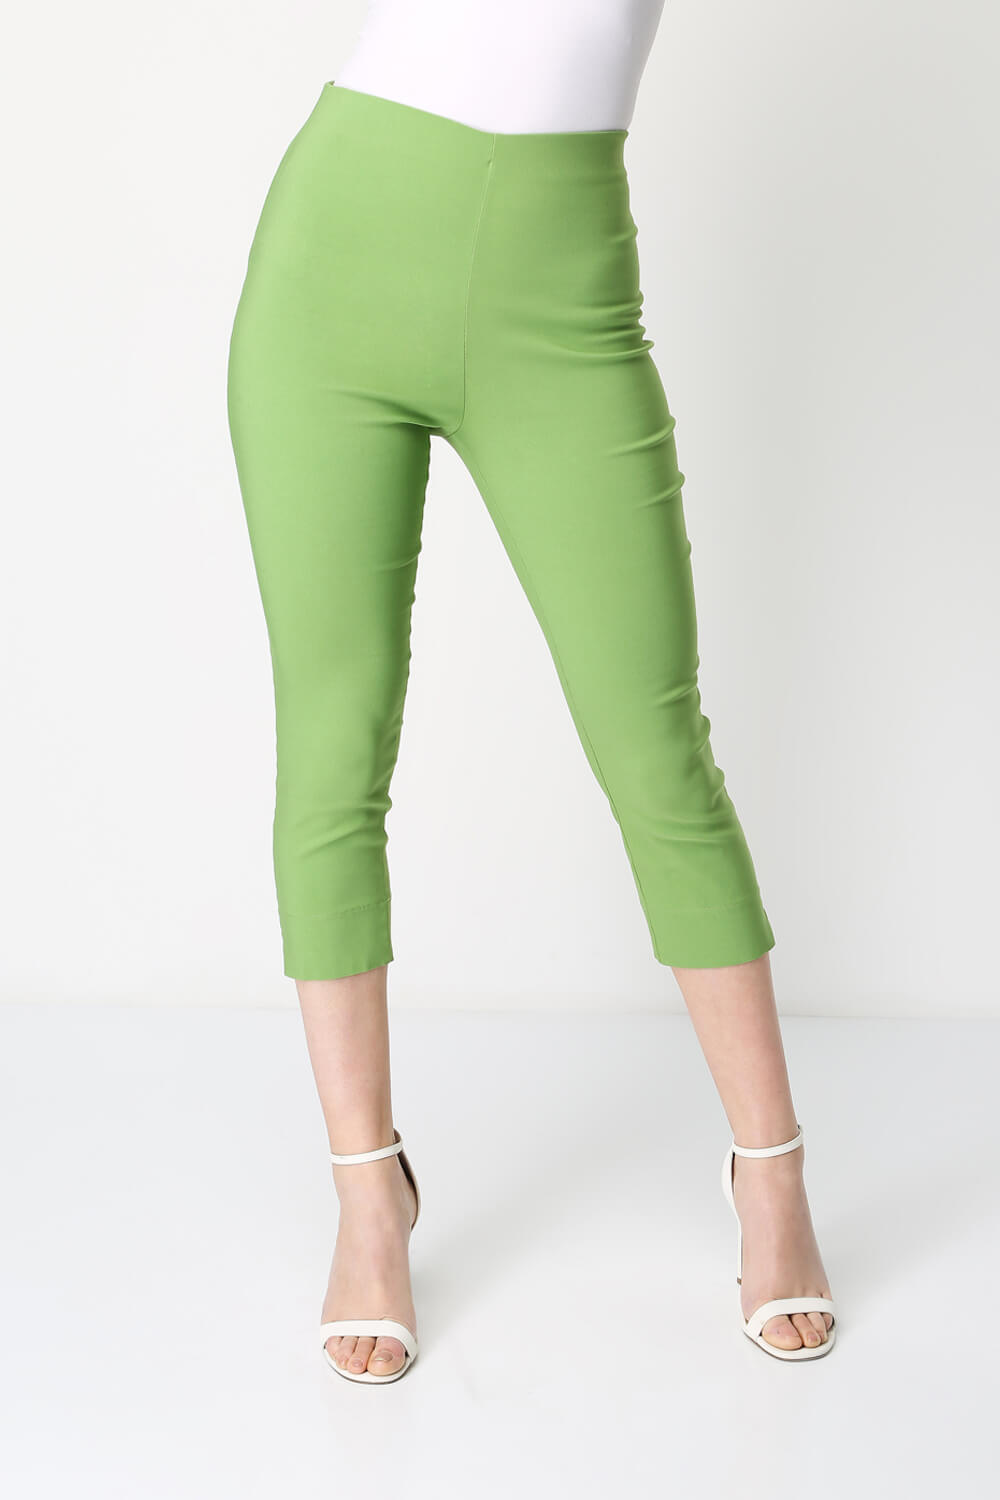 Cropped Stretch Trouser in Pale Green - Roman Originals UK